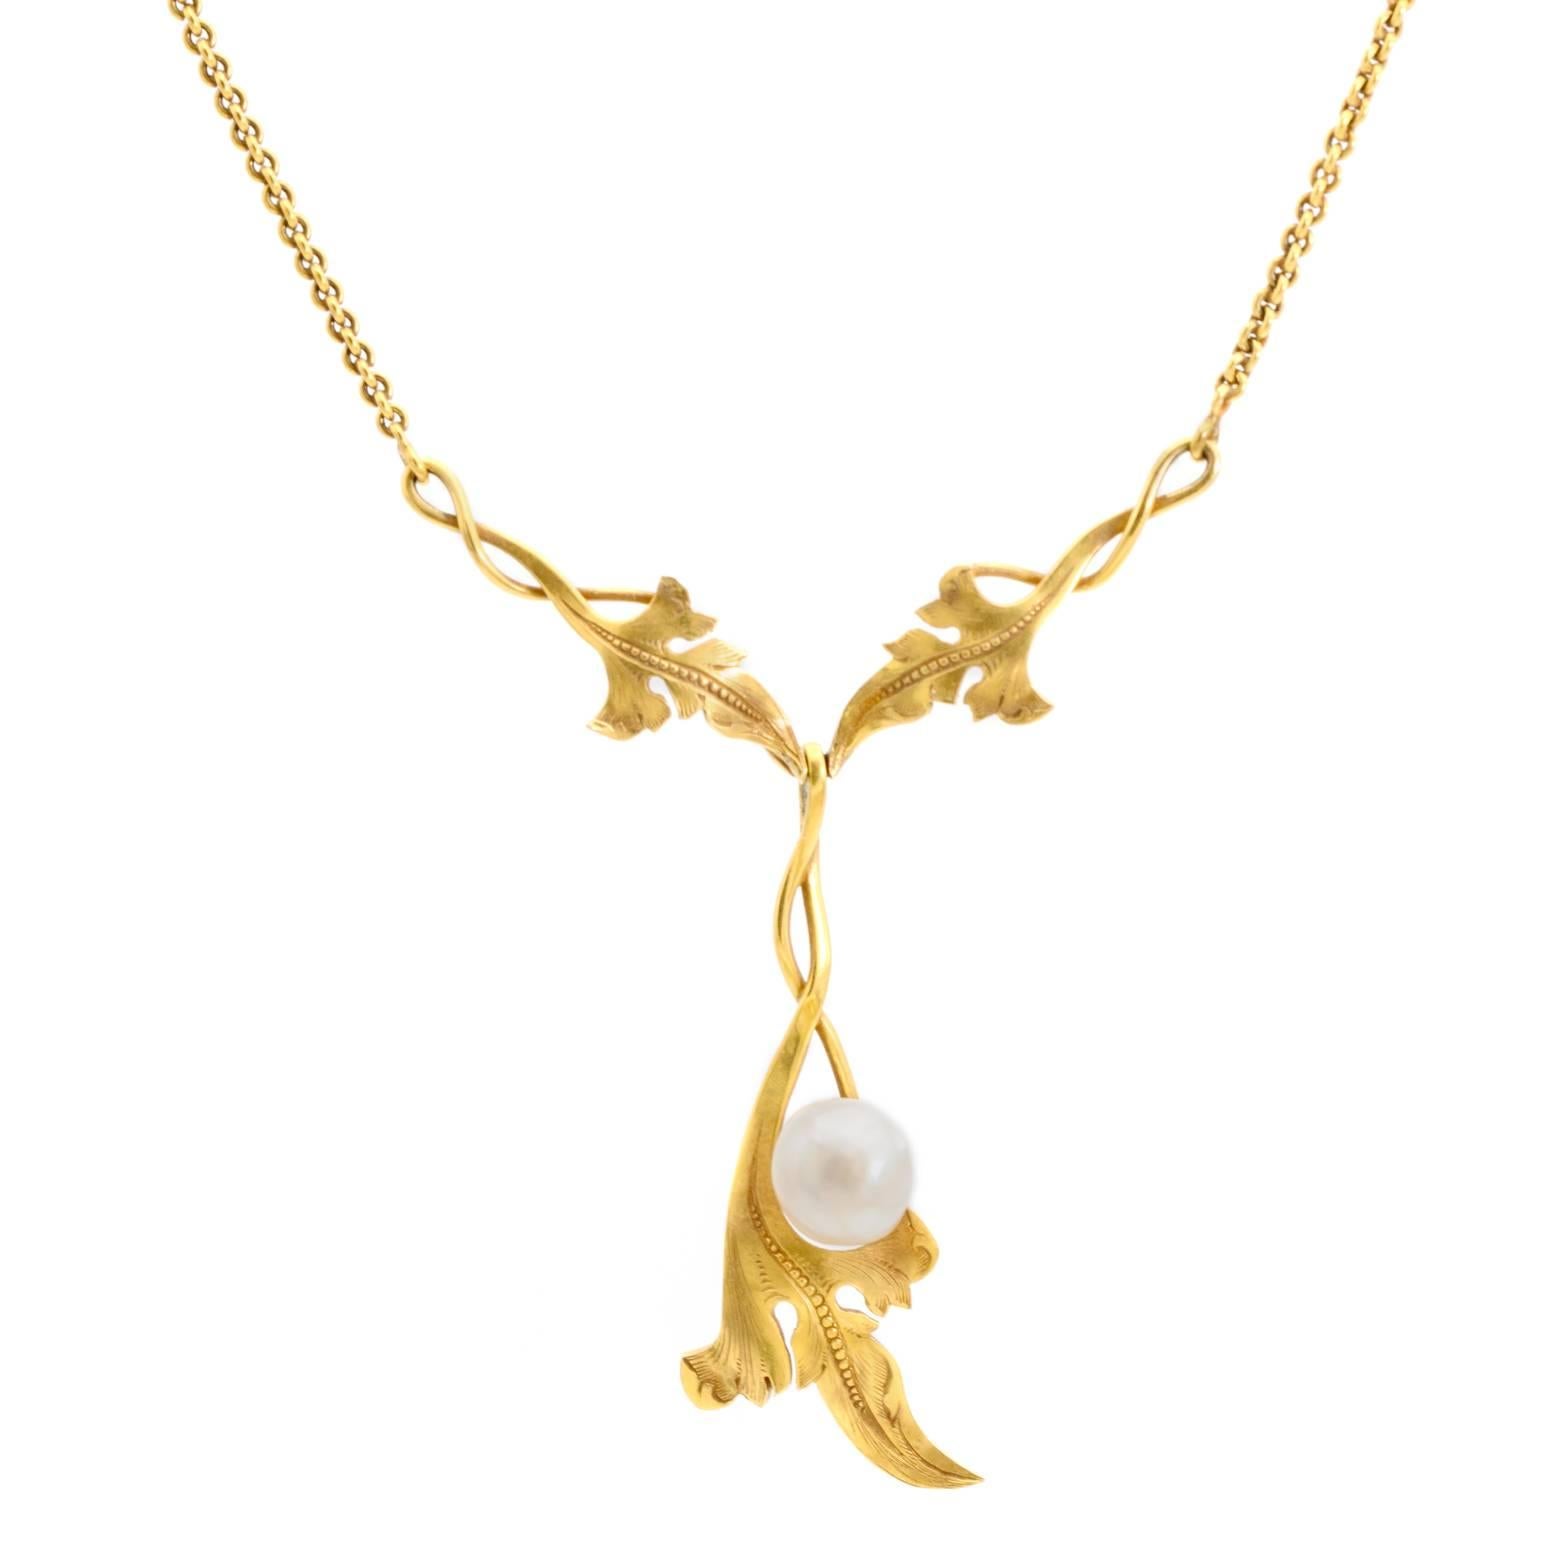 Collier en or ancien de style Art nouveau avec perles naturelles